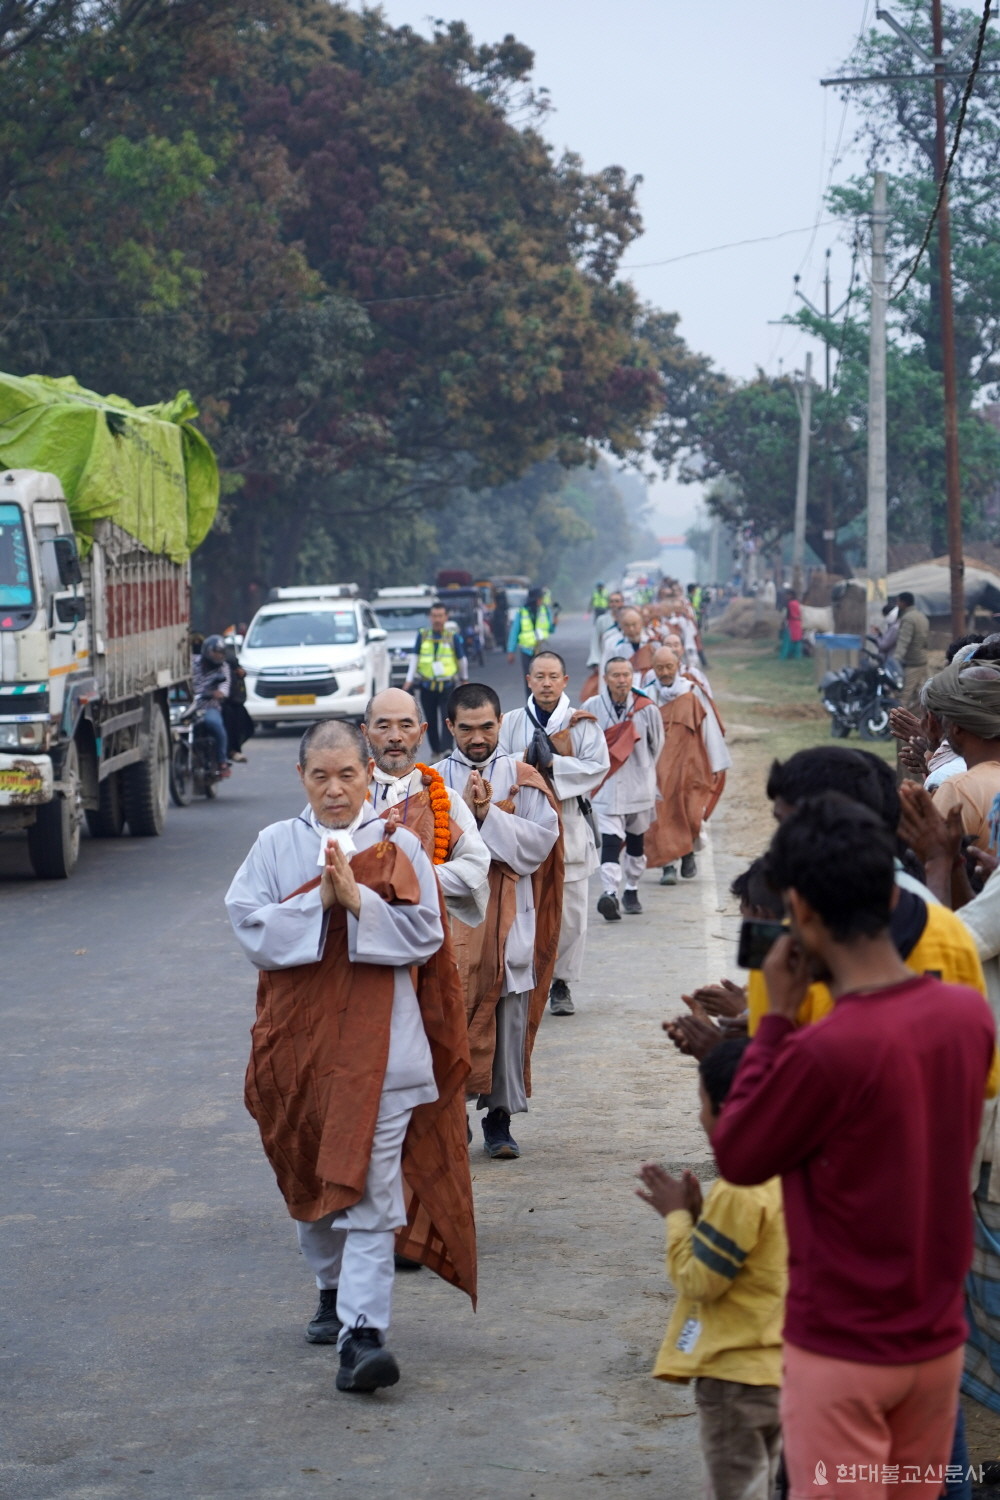 이날 순례는 가는 곳마다 박수와 함께 합장한 인도주민들의 모습이 눈에 띄었다. 마을 주민들이 스님들의 행선을 보고 합장하며 예를 올리고 있다.